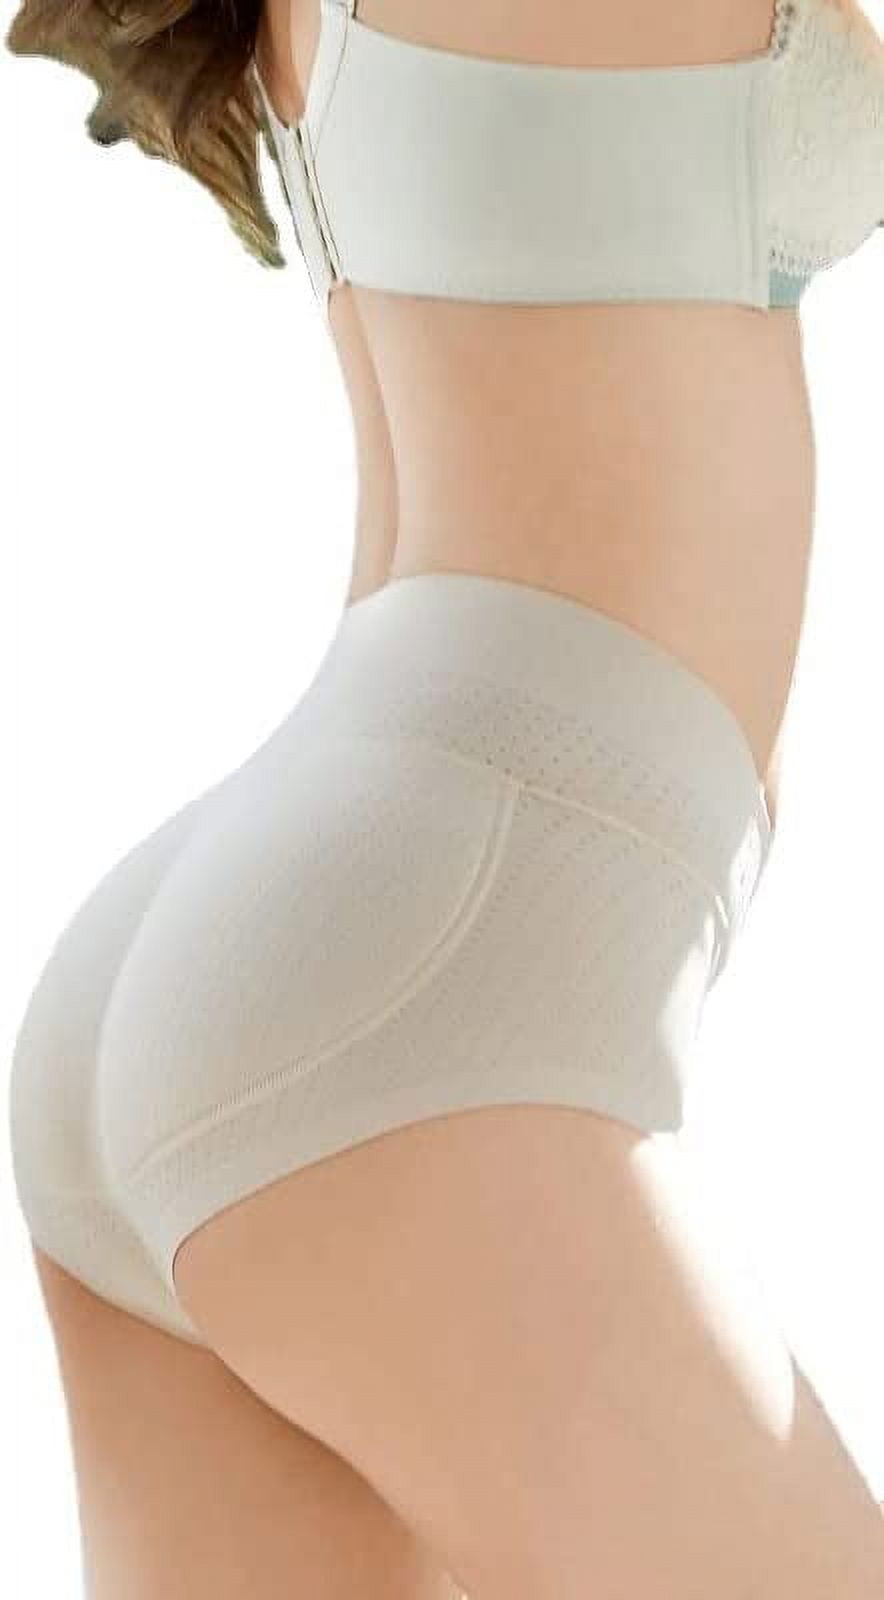 O'Gilead Women Shapewear Padded Underwear Waist Slimmer Butt Lifter